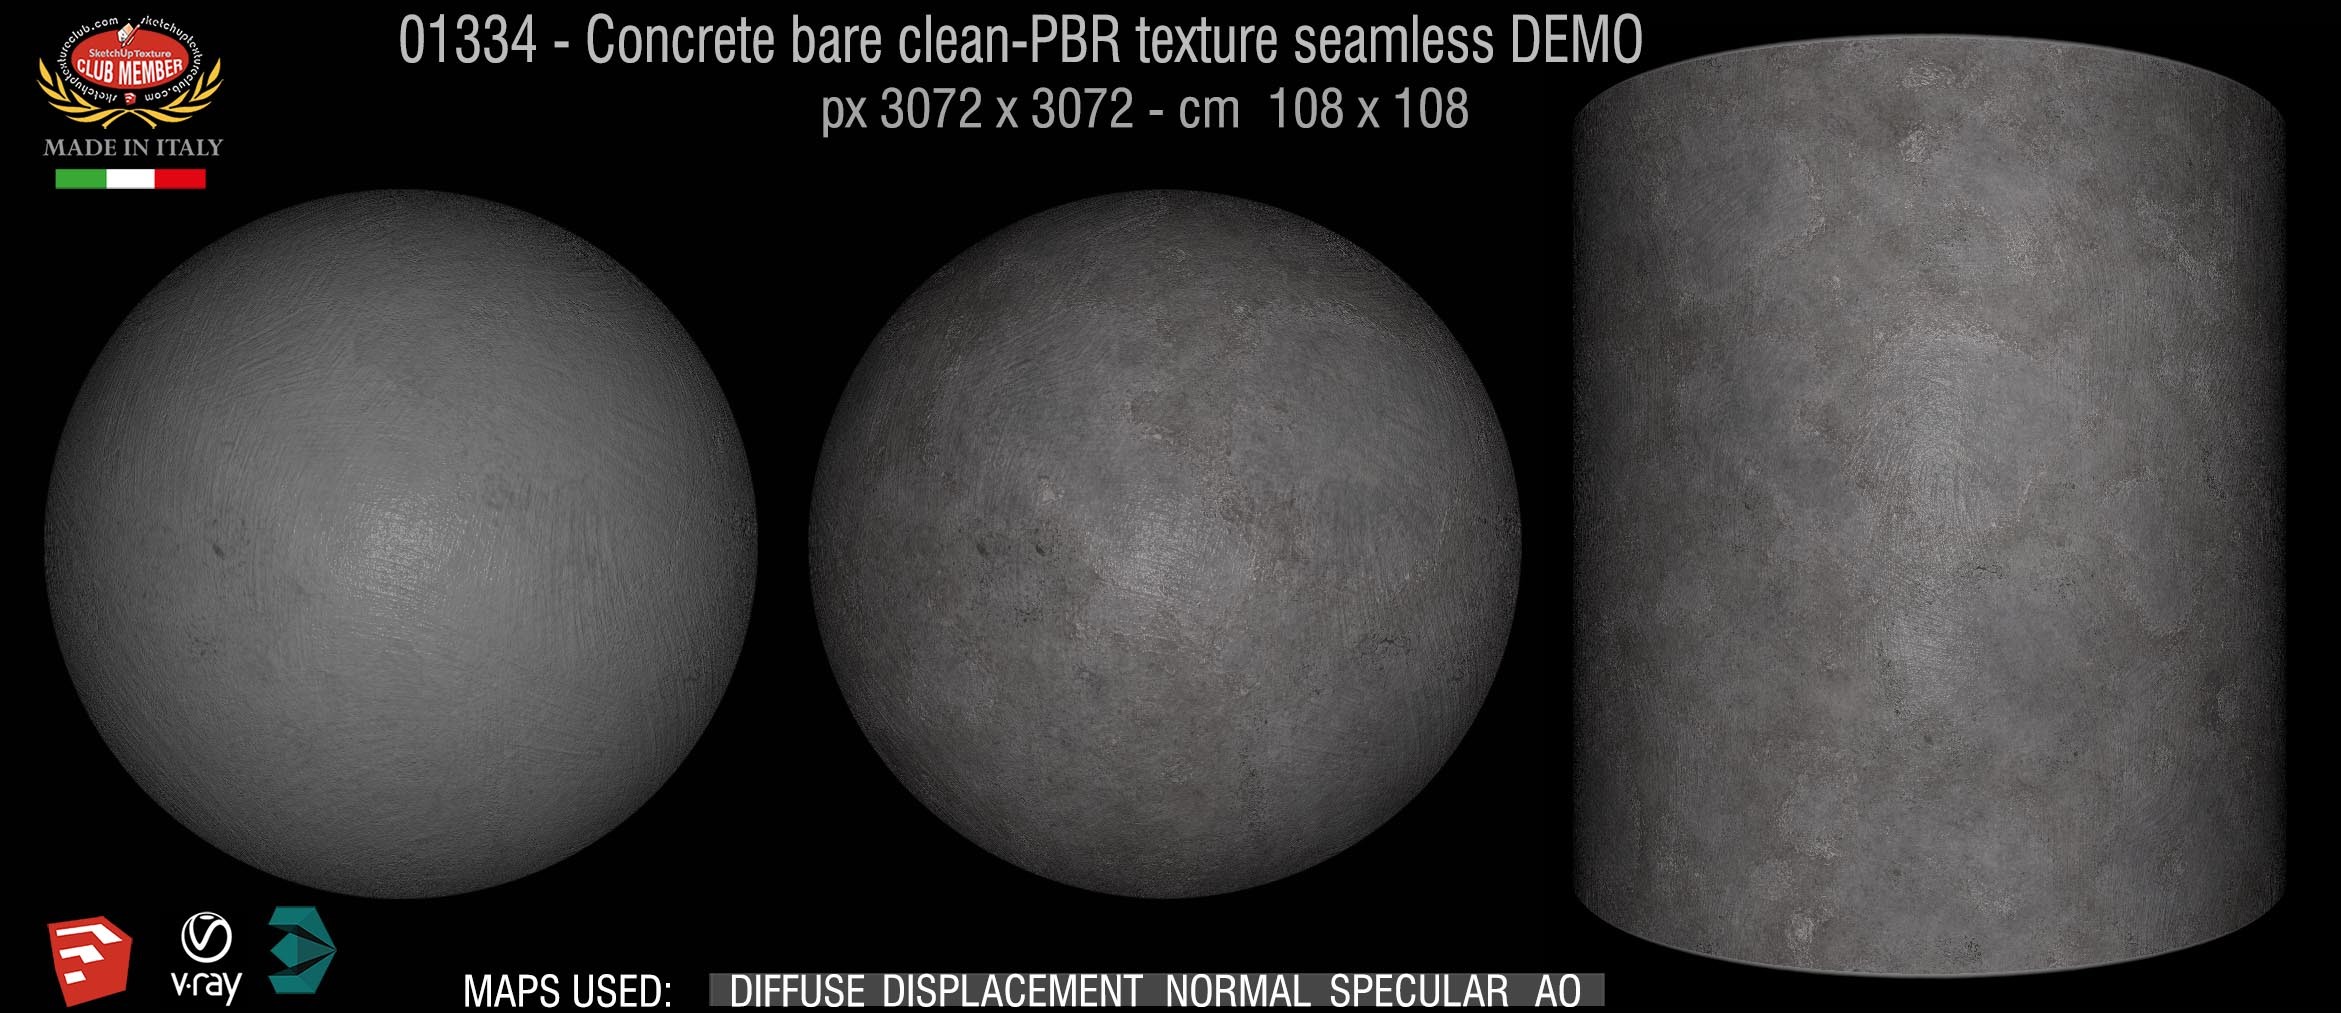 01334 Concrete bare clean-PBR texture seamless DEMO